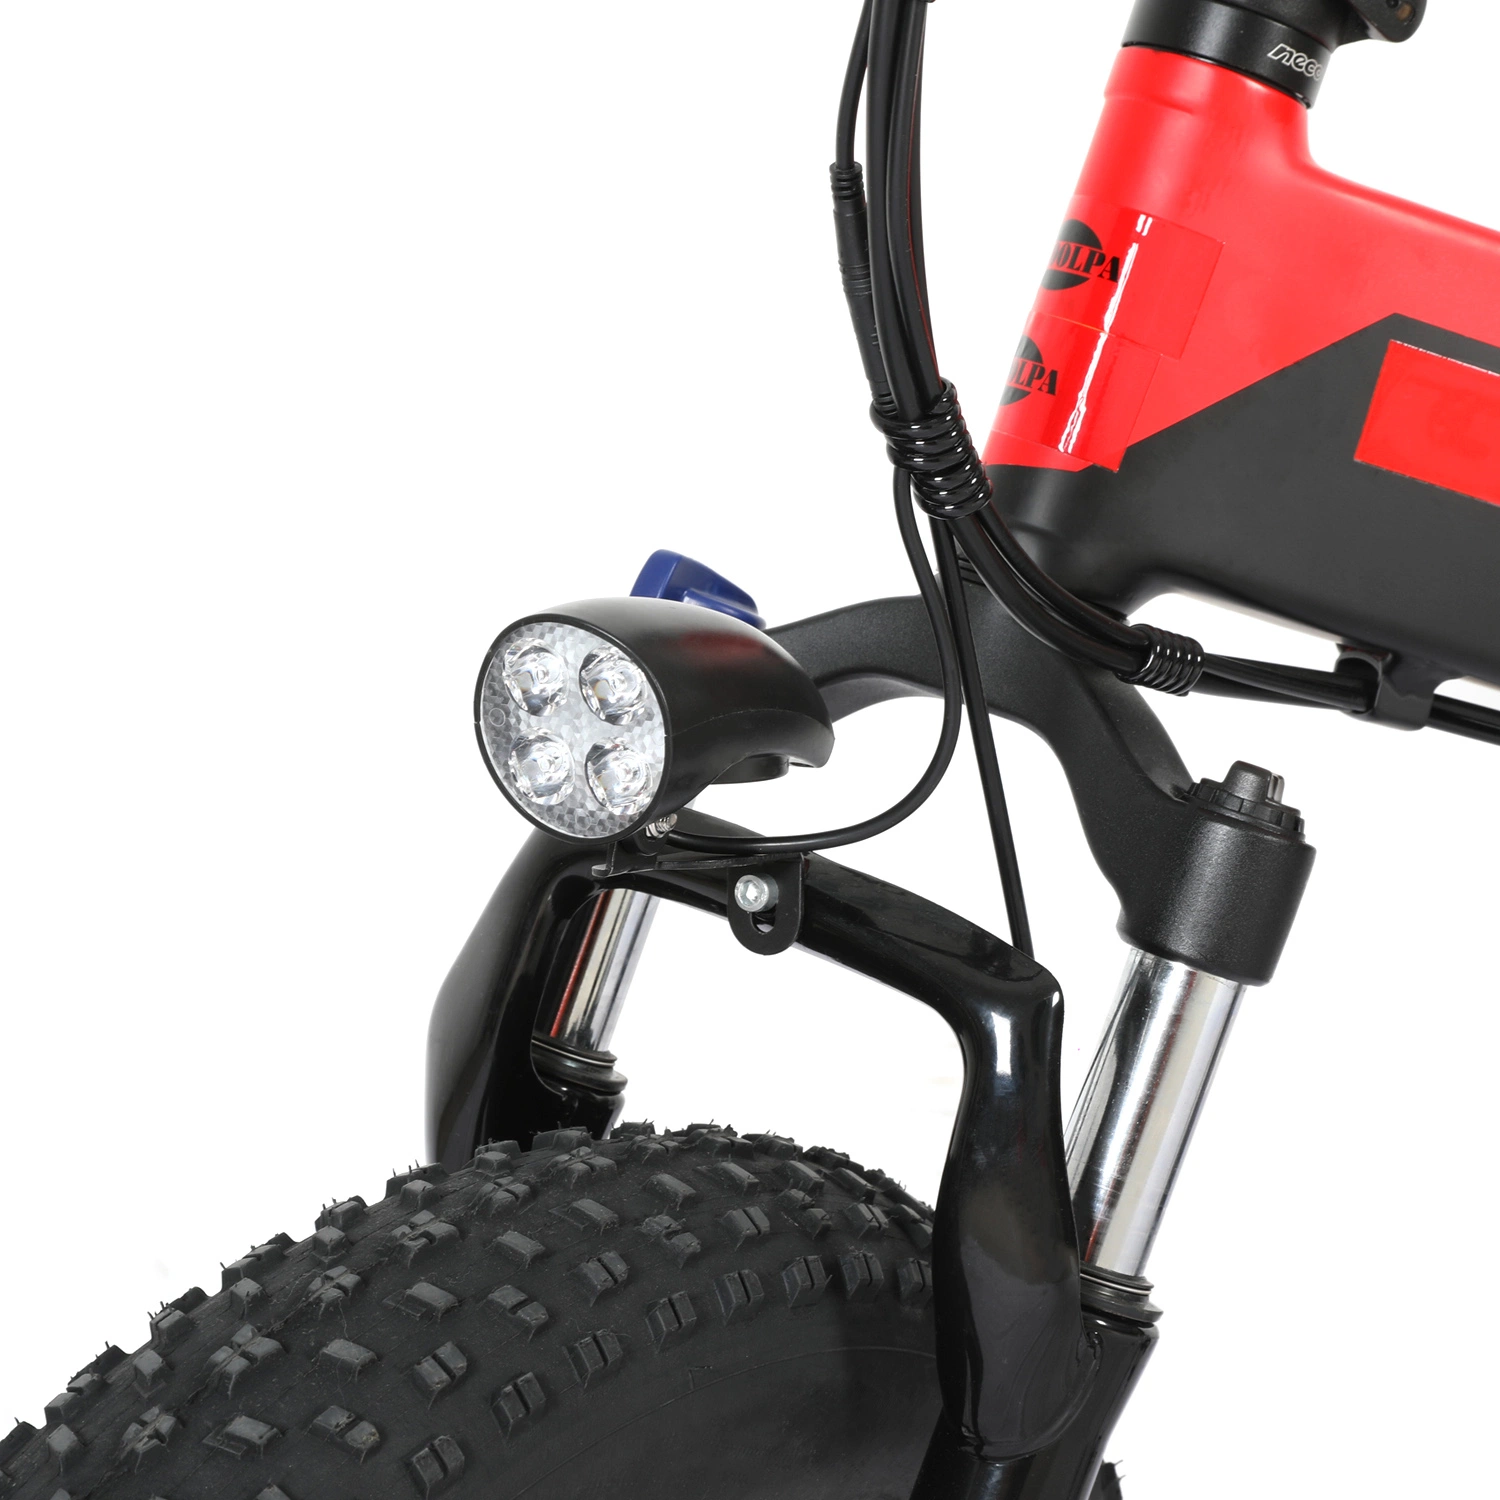 Bateria dupla 48 V 27,5 a, bicicleta elétrica articulada de montanha, bicicleta elétrica Moto citadina com suspensão dianteira de travão duplo com motor de 500 W.